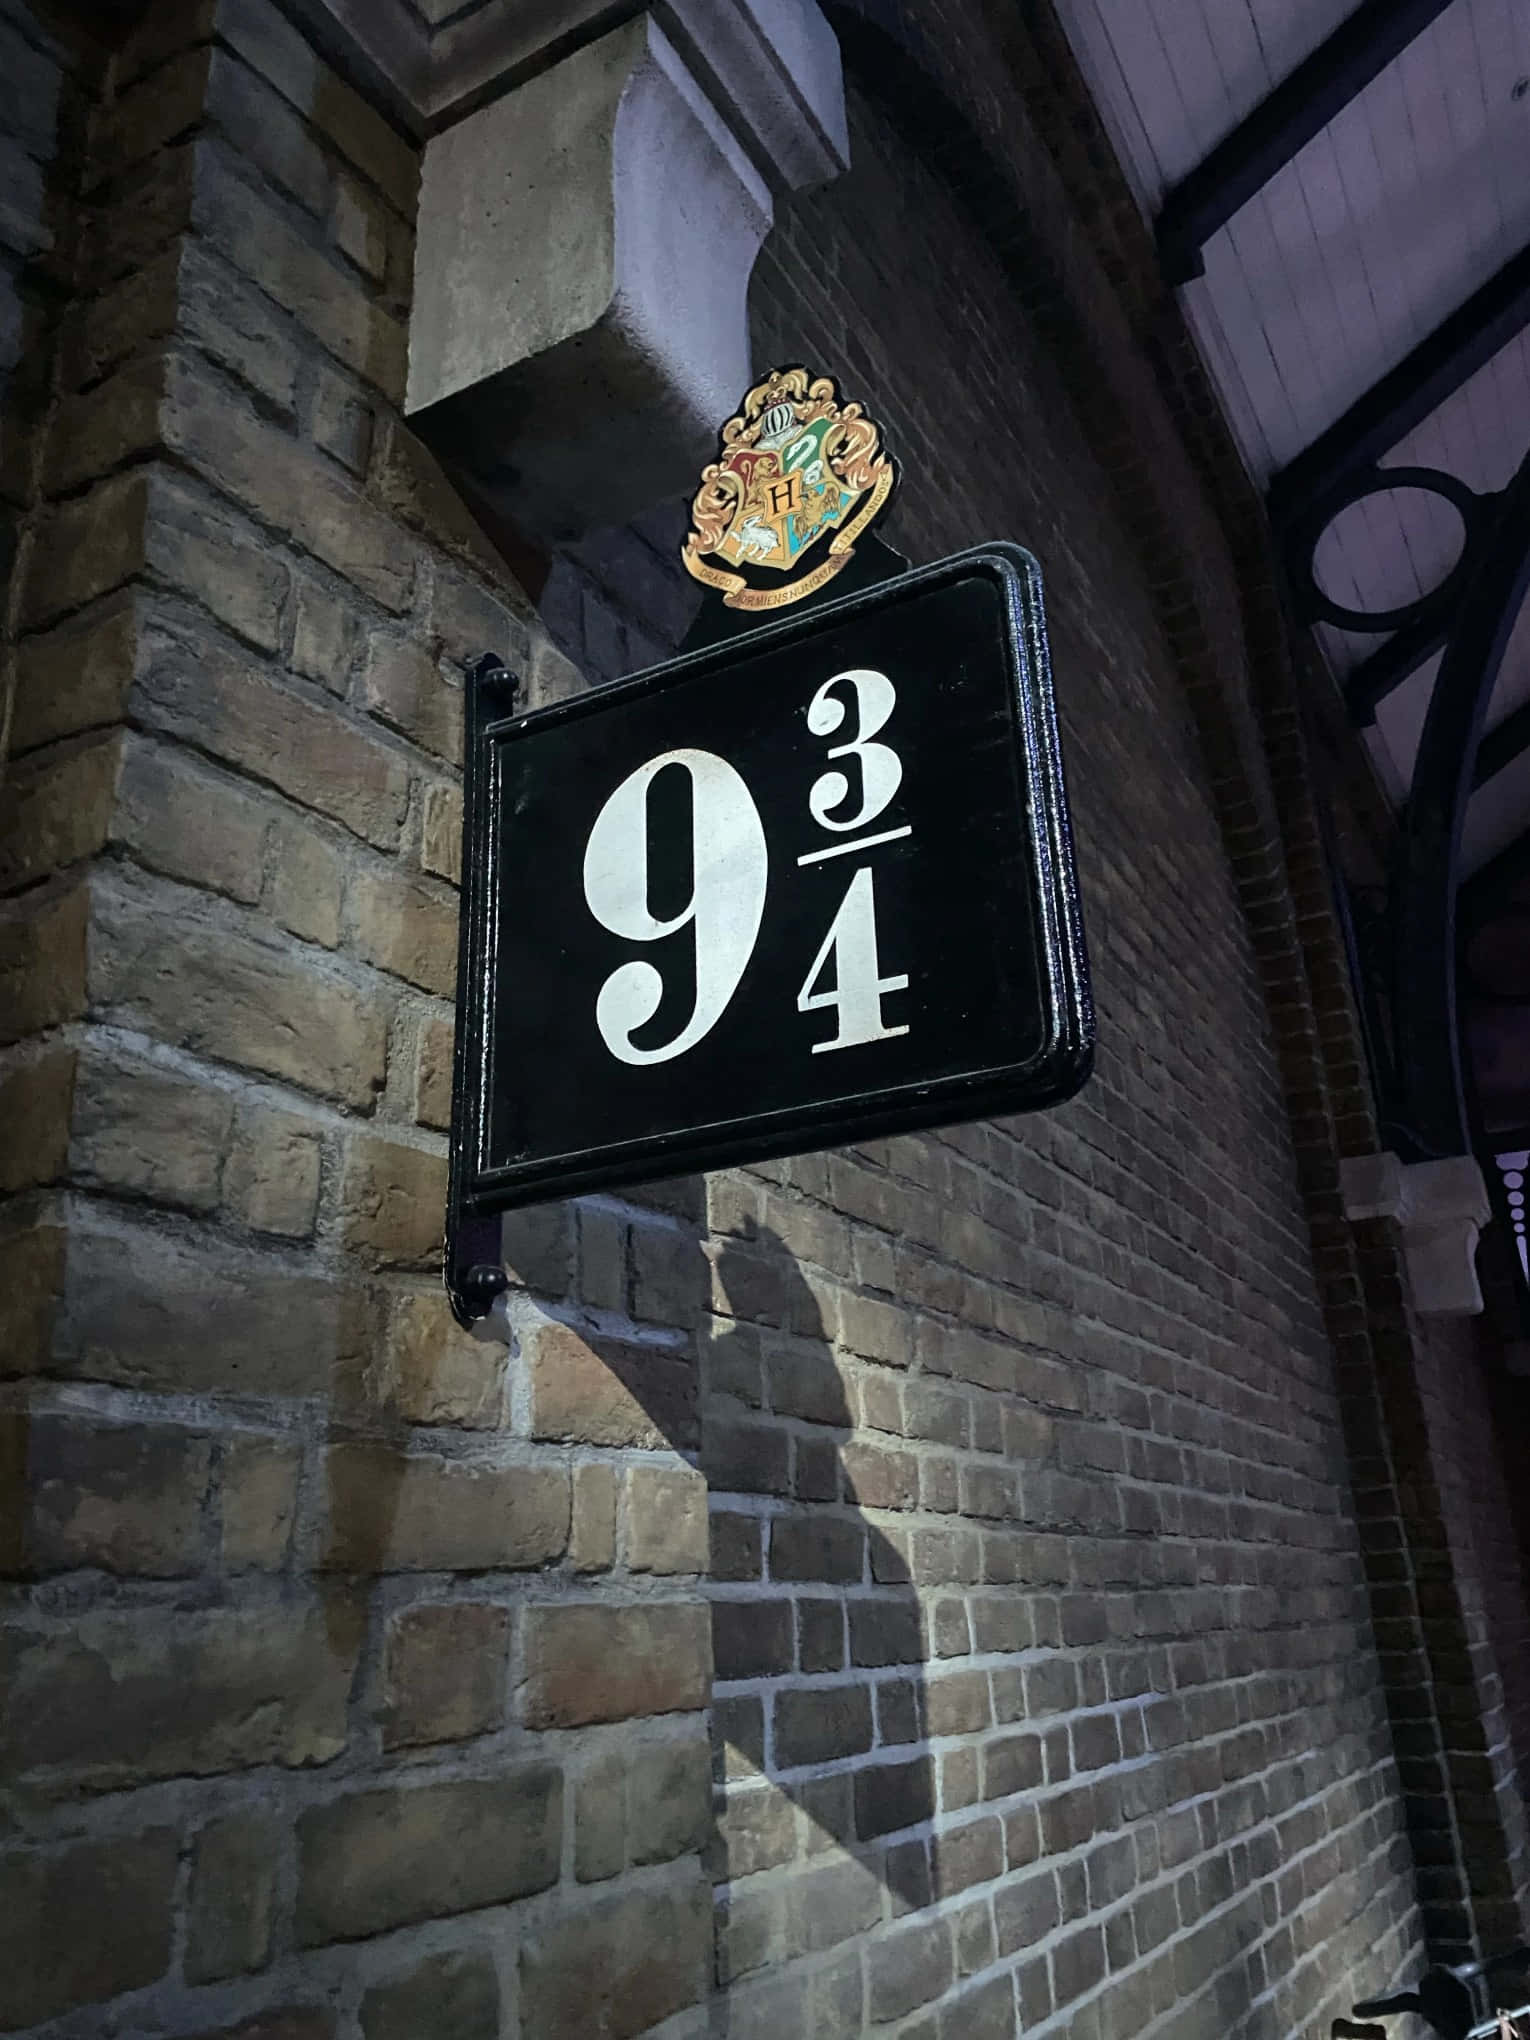 Harry Potter Backdrop  Harry potter decor, Harry potter theme, Hogwarts  express